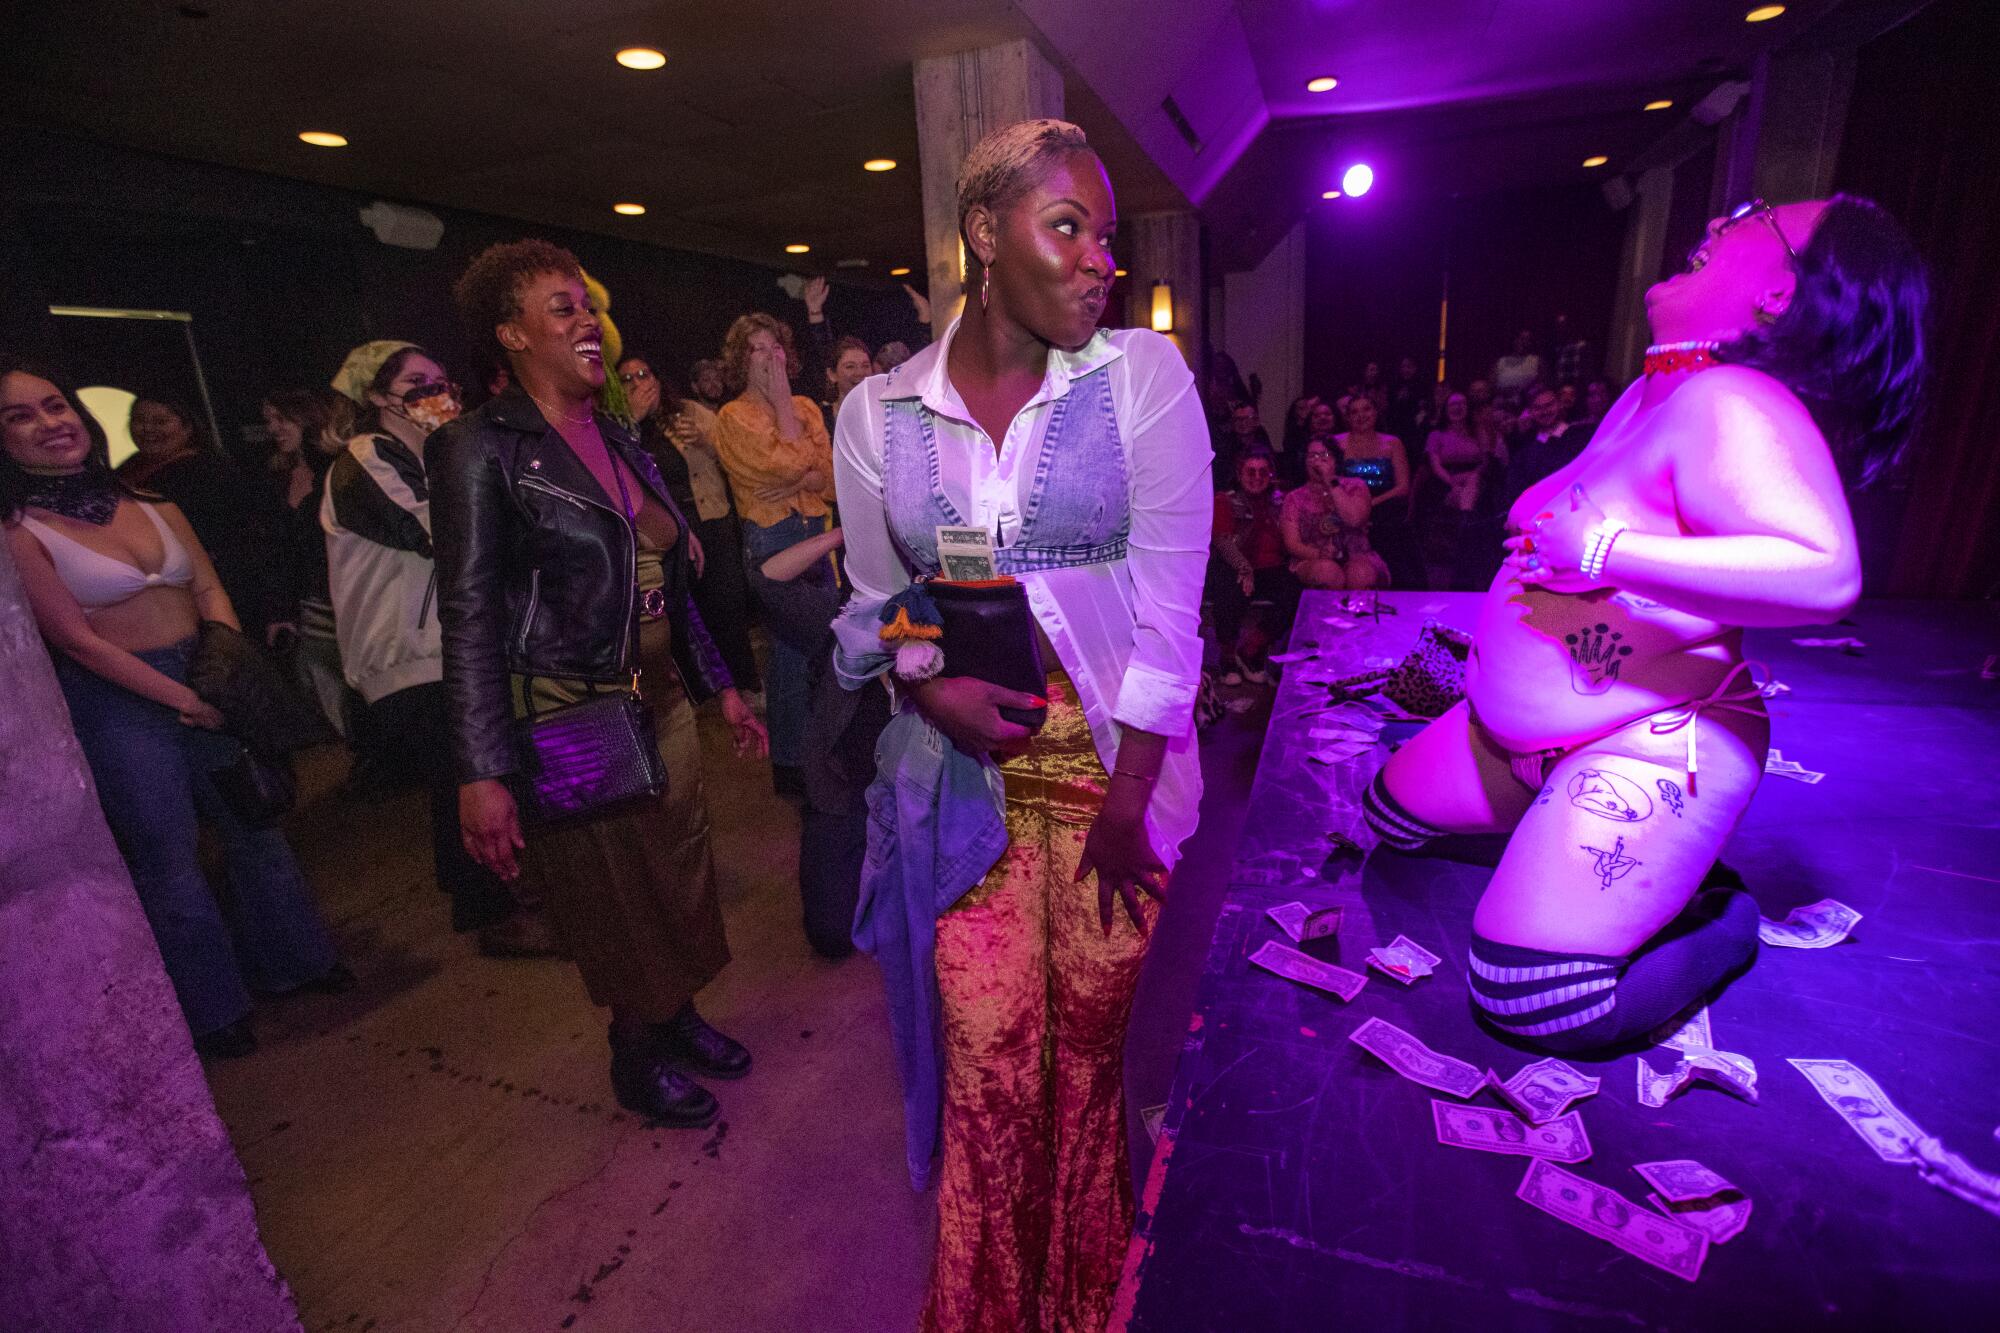 Thick Strip burlesque revue celebrates plus-size beauty - Los